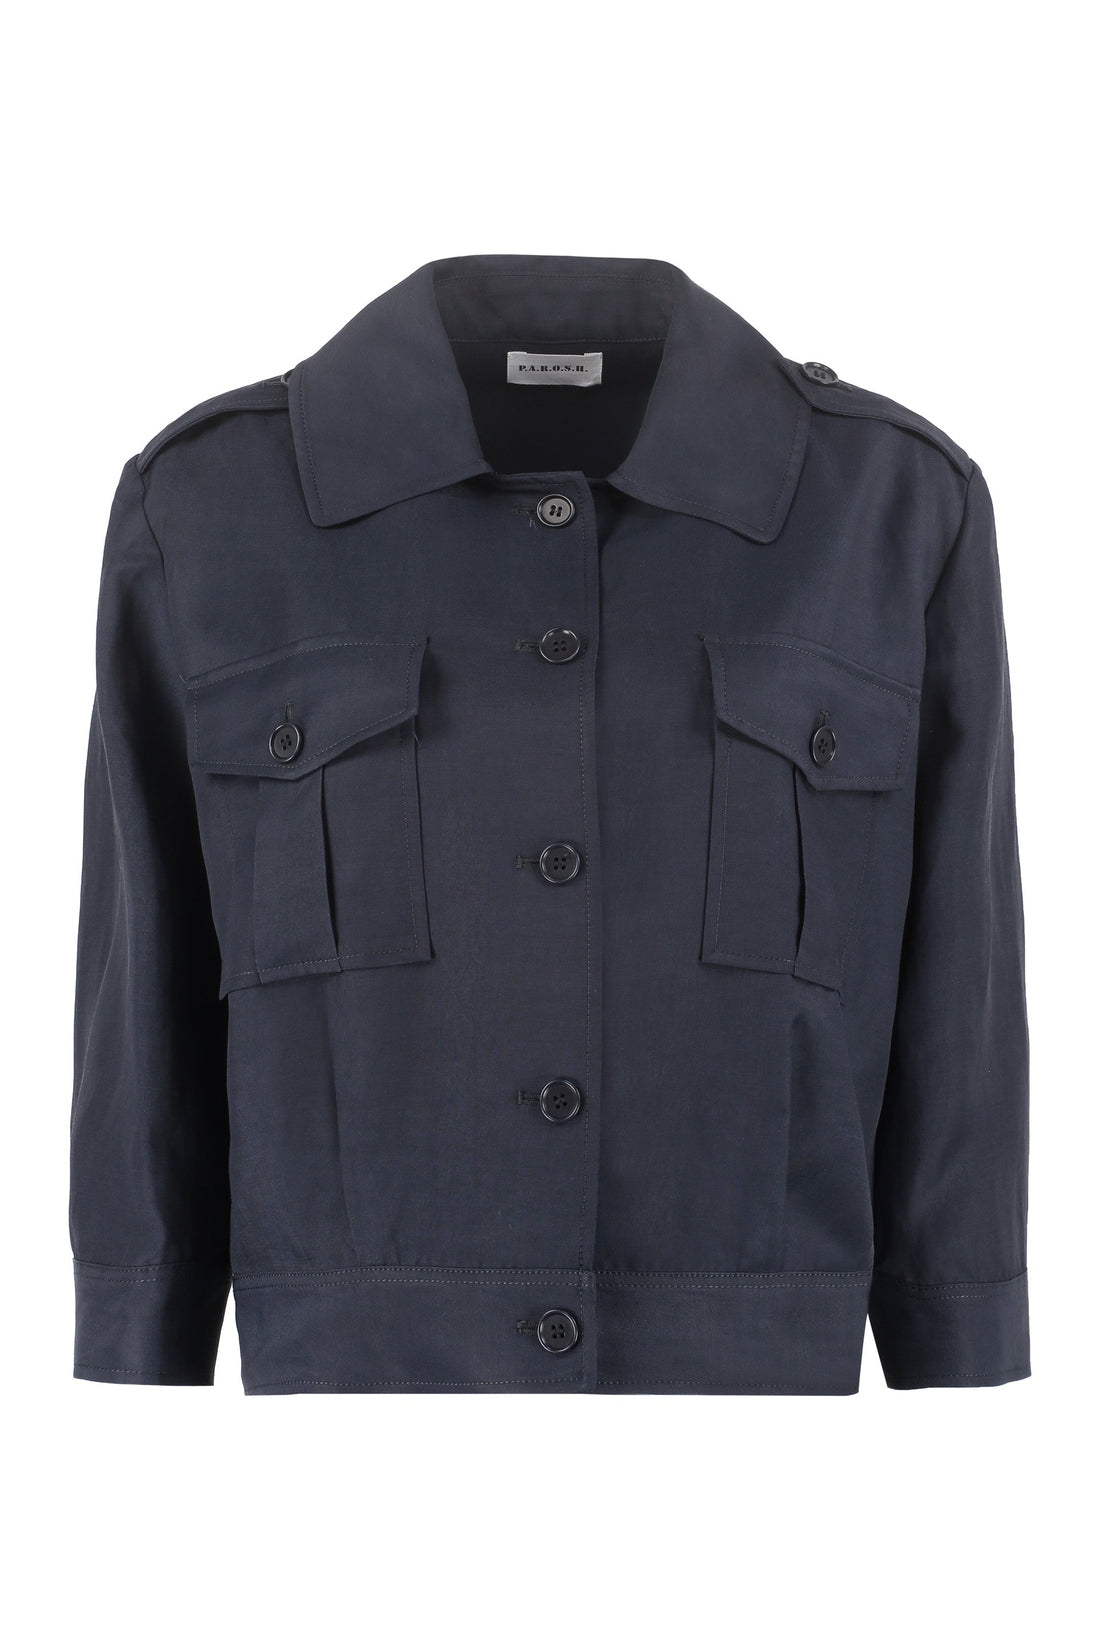 Parosh-OUTLET-SALE-Raisa buttoned jacket-ARCHIVIST